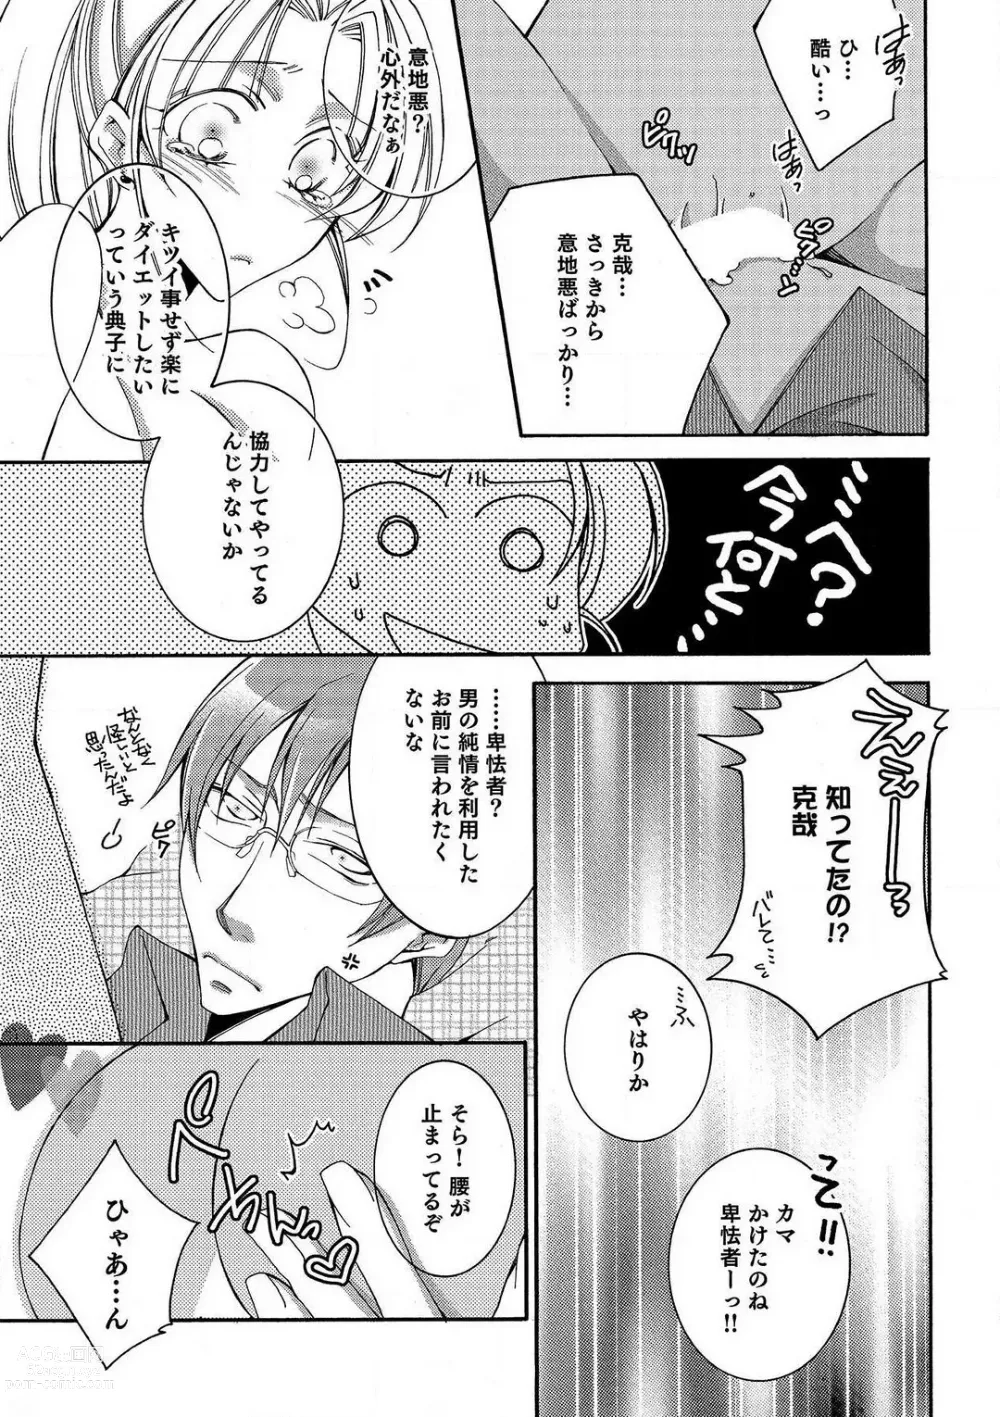 Page 18 of manga LOVE×PLAY 1-4